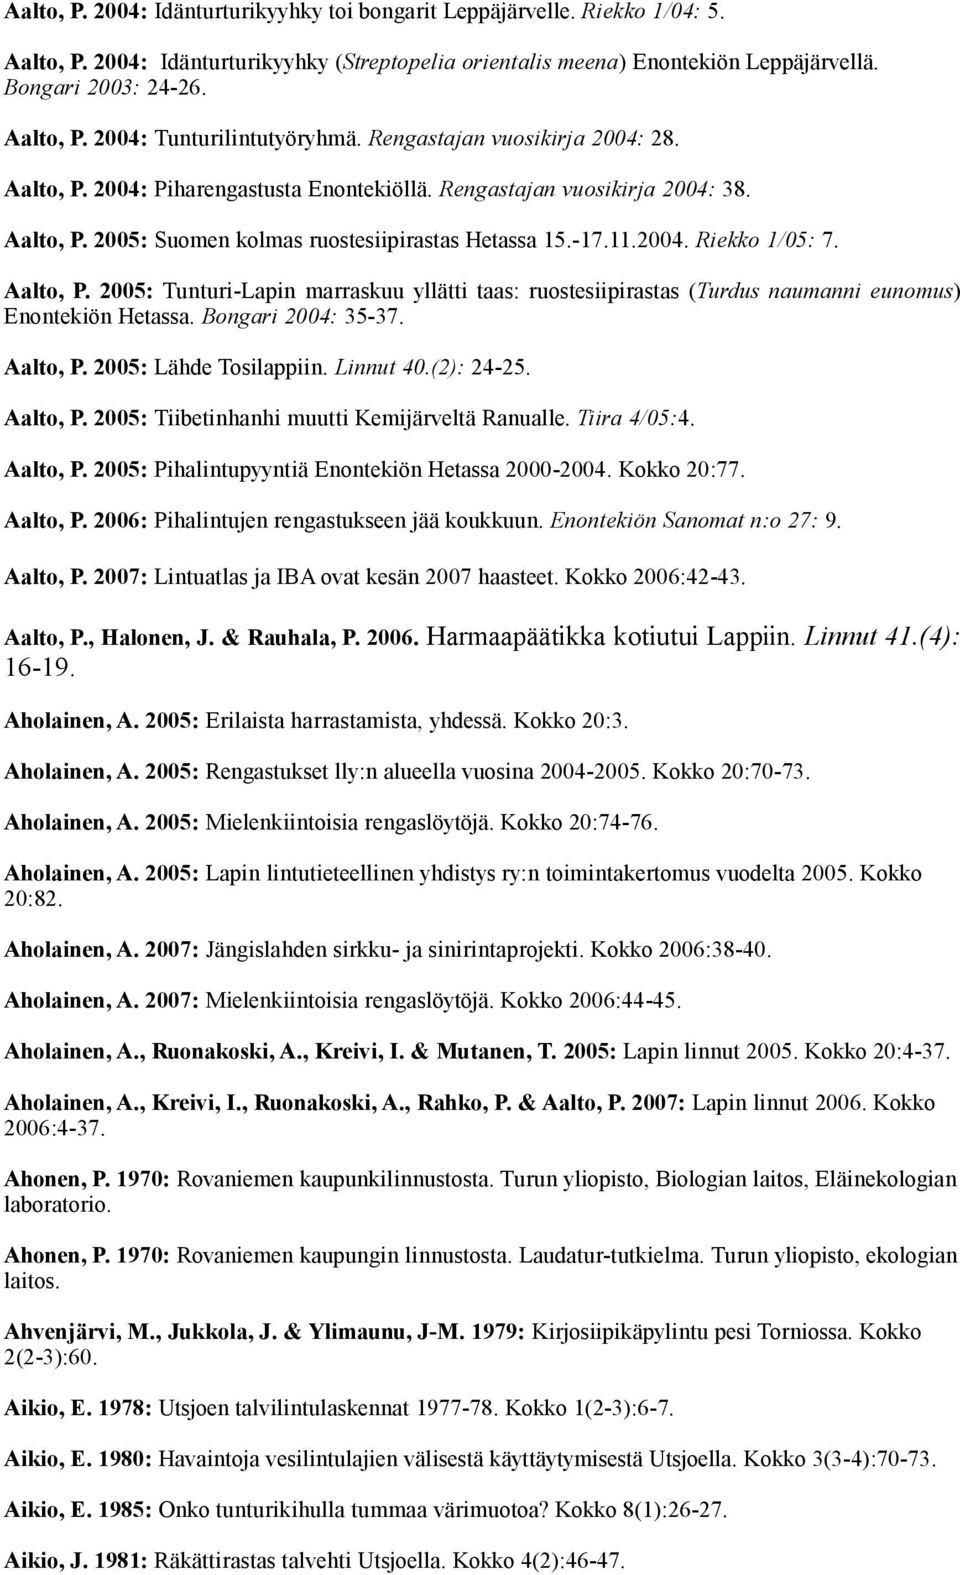 Aalto, P. 2005: Tunturi-Lapin marraskuu yllätti taas: ruostesiipirastas (Turdus naumanni eunomus) Enontekiön Hetassa. Bongari 2004: 35-37. Aalto, P. 2005: Lähde Tosilappiin. Linnut 40.(2): 24-25.